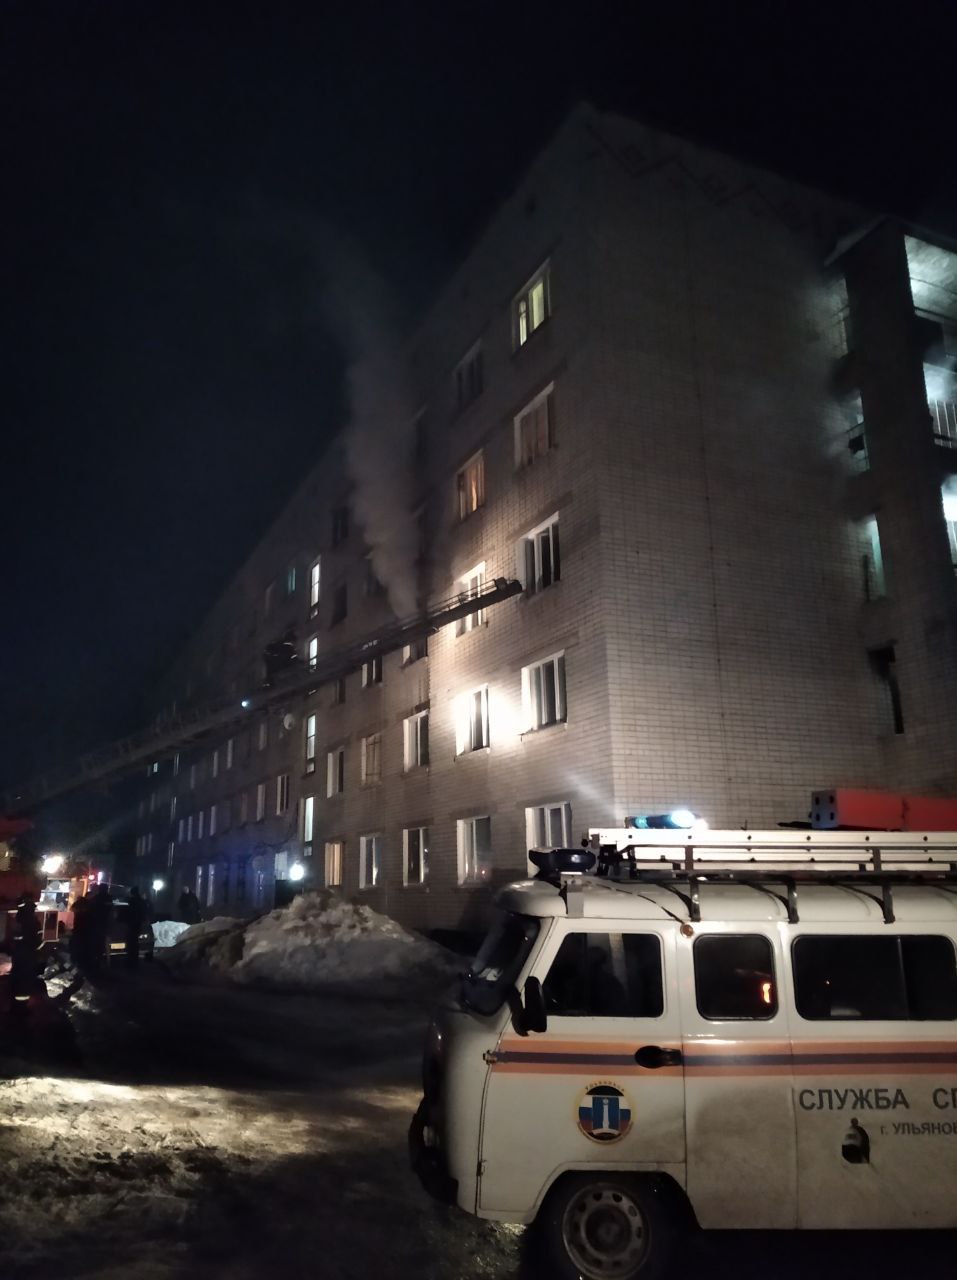 В Ульяновске при пожаре спасено два человека.